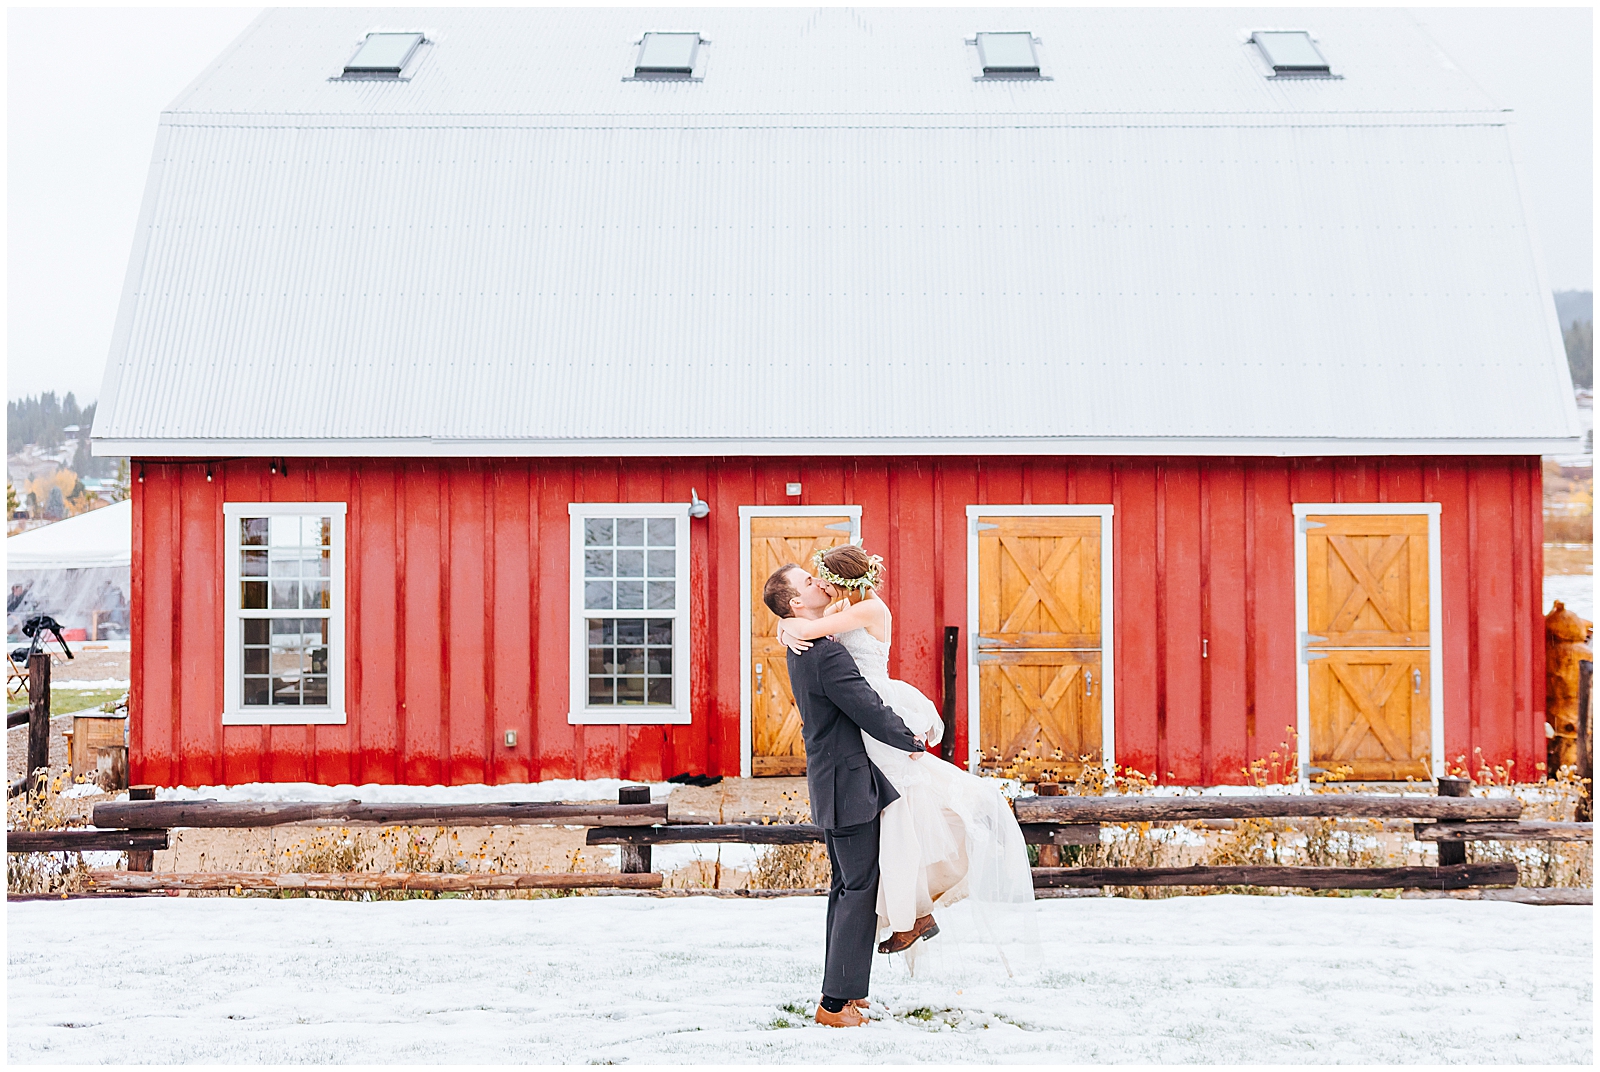 Snowy Red Barn Wedding Portrait at Sixty Chapel